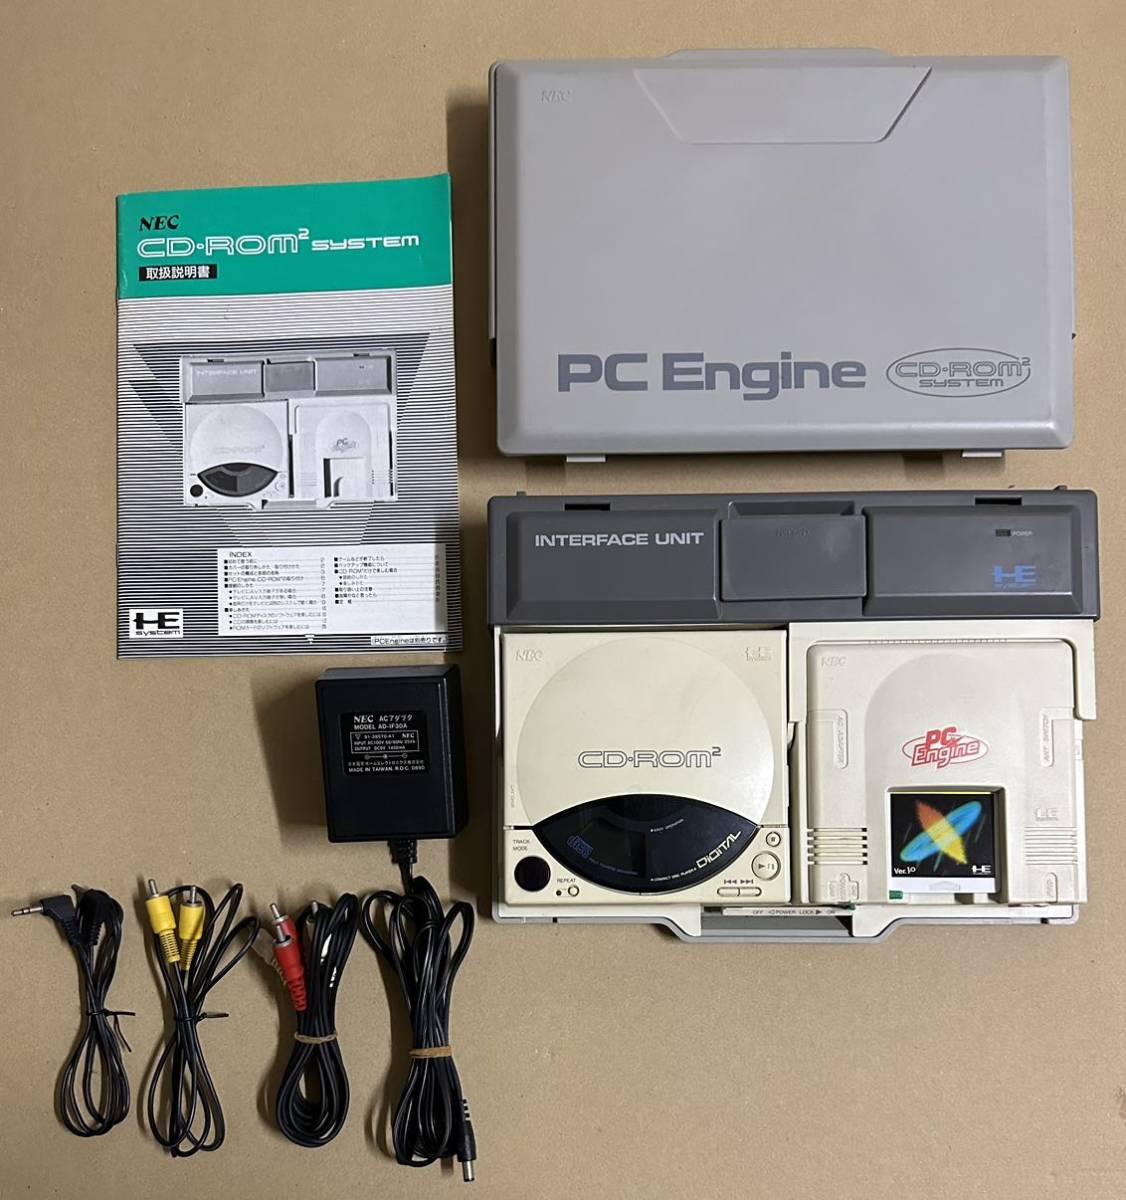 PCエンジン CD-ROM2インターフェイスユニット ジャンク品(中古/送料